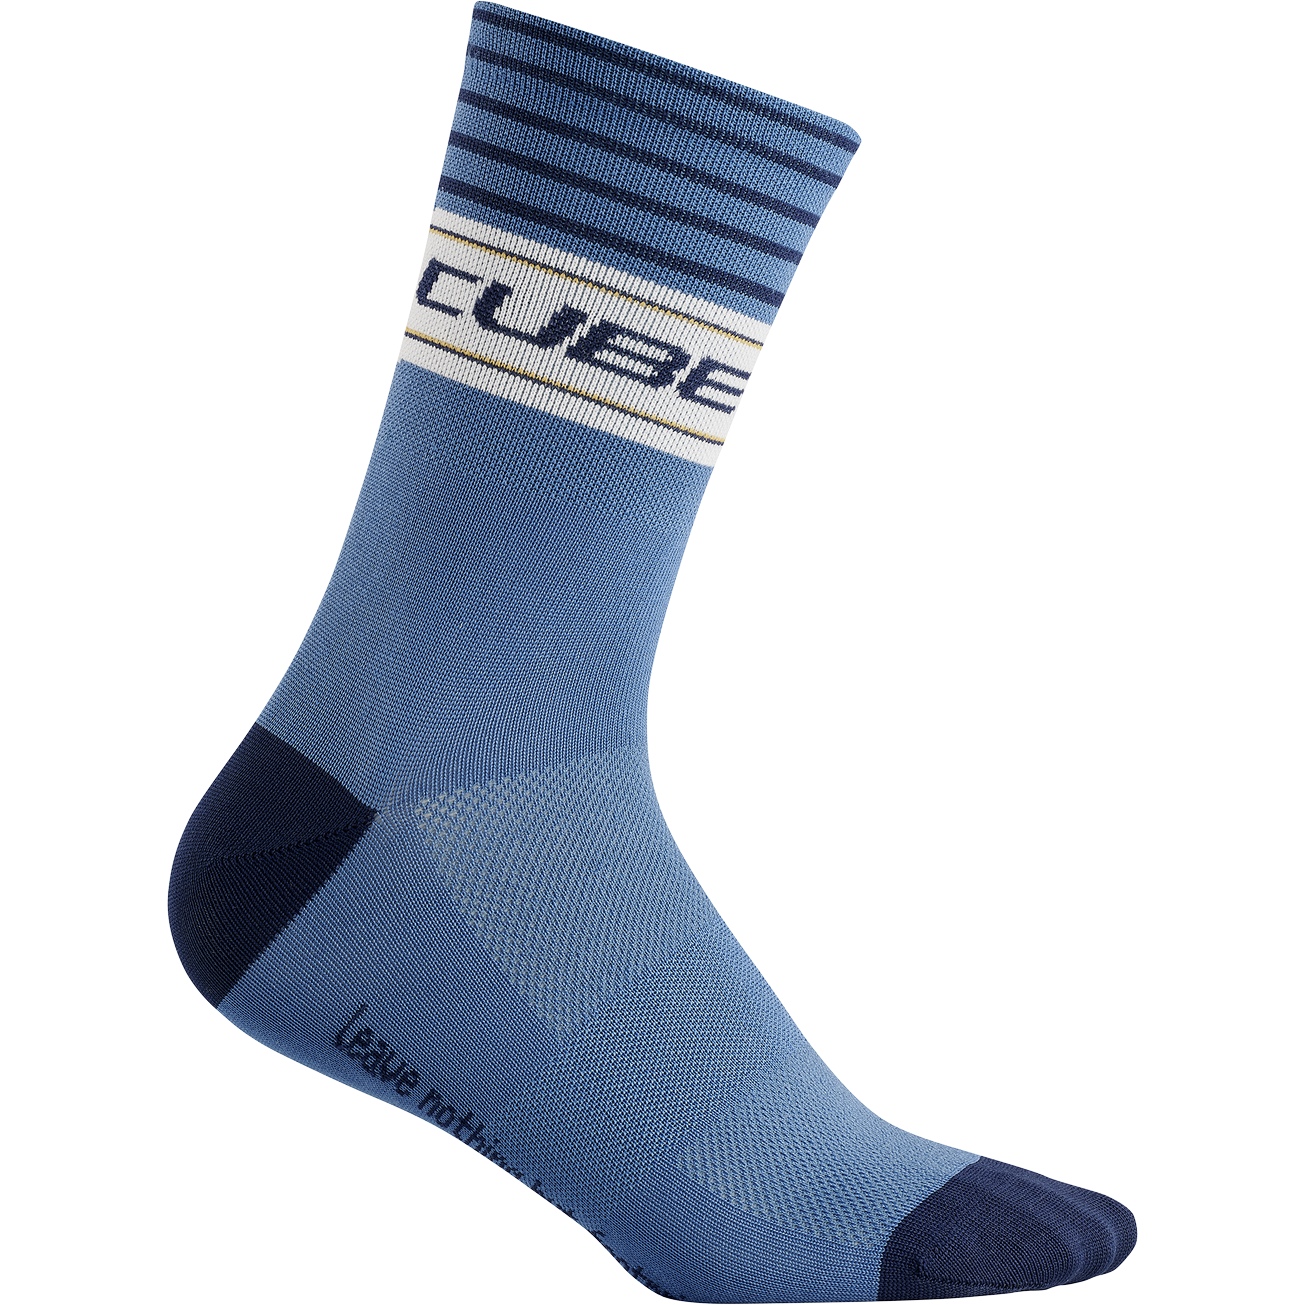 Produktbild von CUBE Blackline High Cut Socken - blau